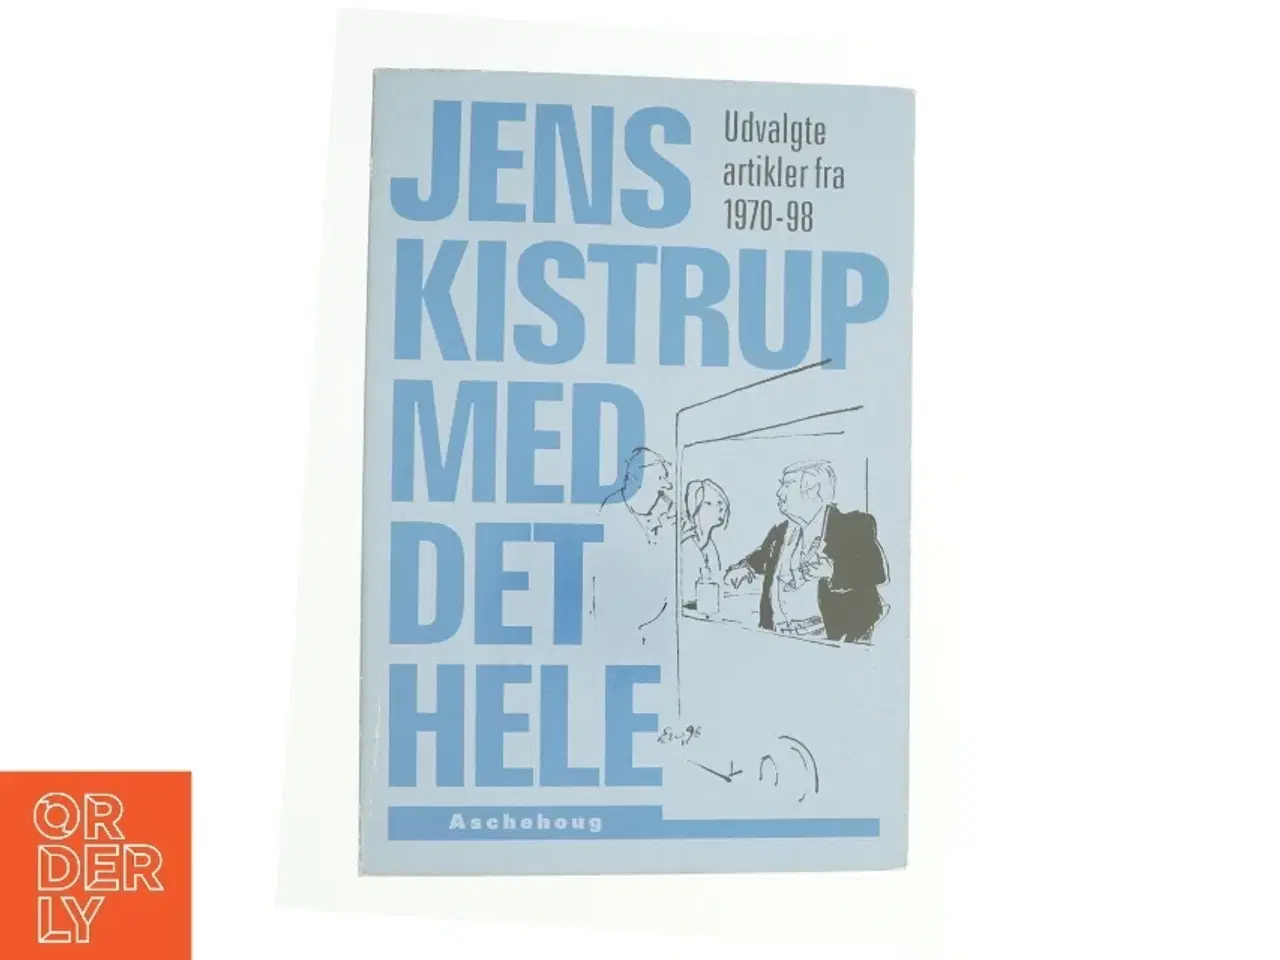 Billede 1 - Jens Kistrup med det hele : udvalgte artikler fra 1970-98 af Jens Kistrup (Bog)